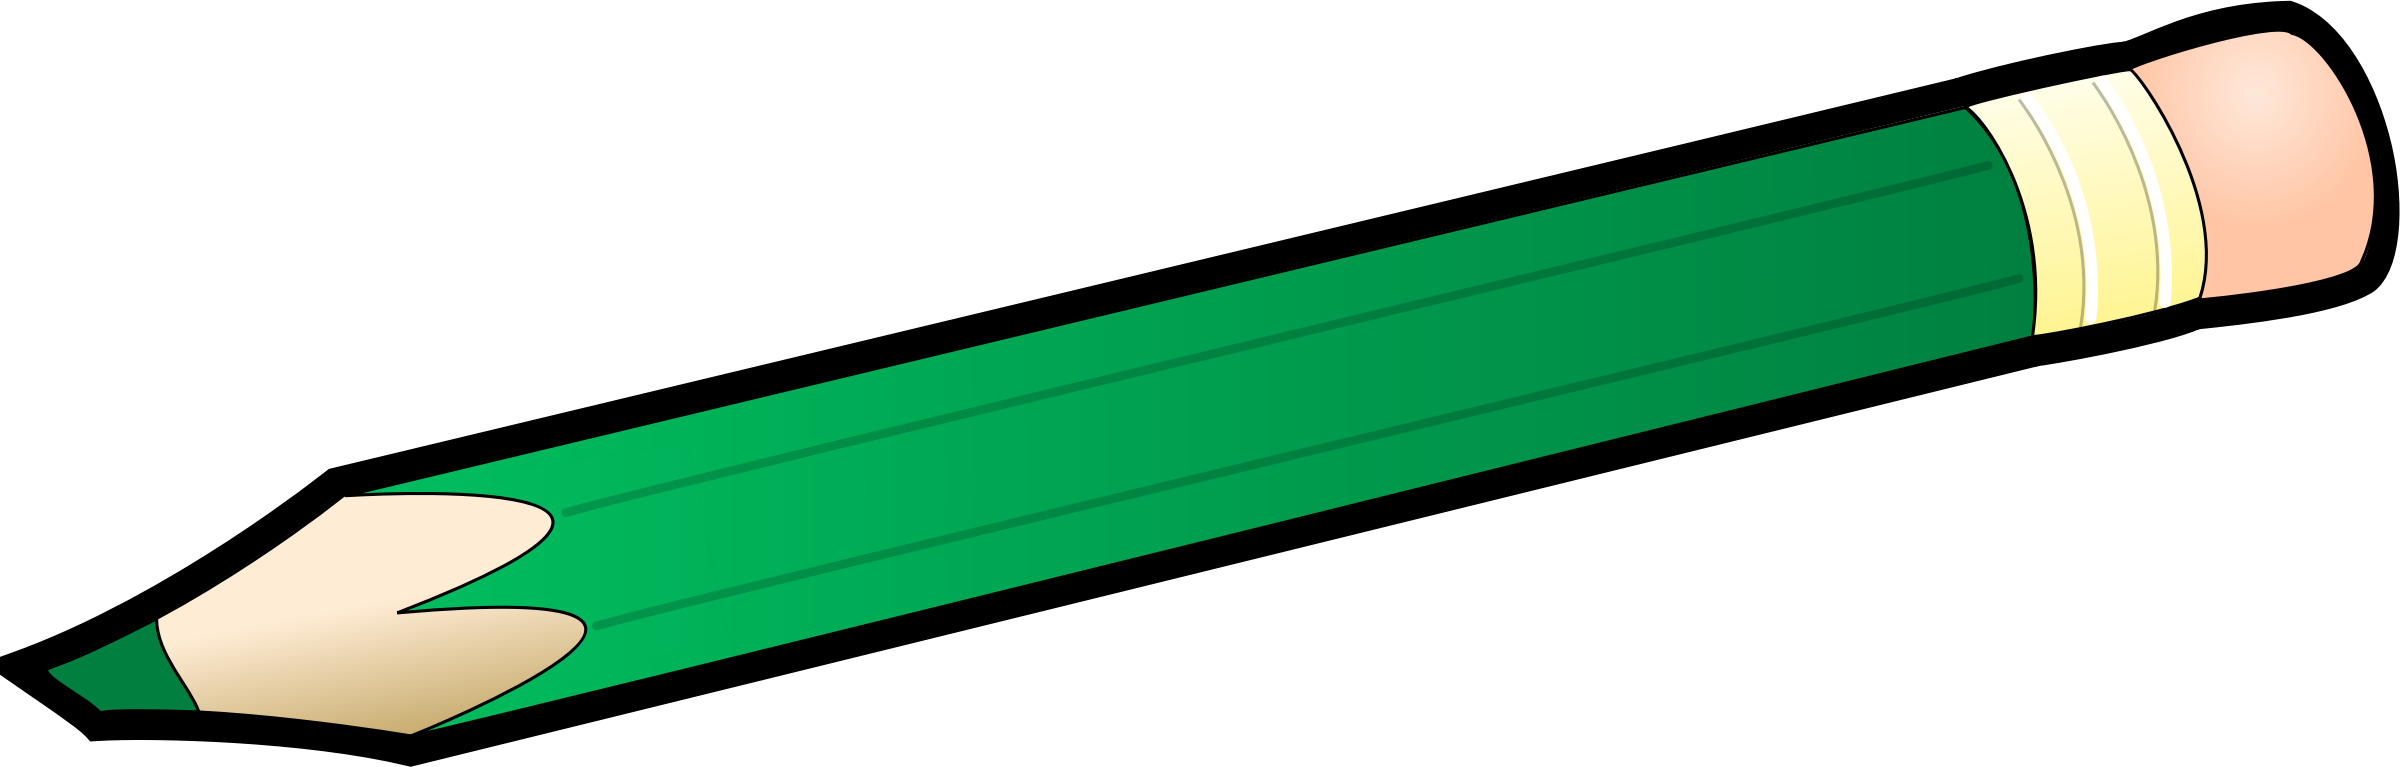 Big Image - Green Pencil Clipart (2400x767)